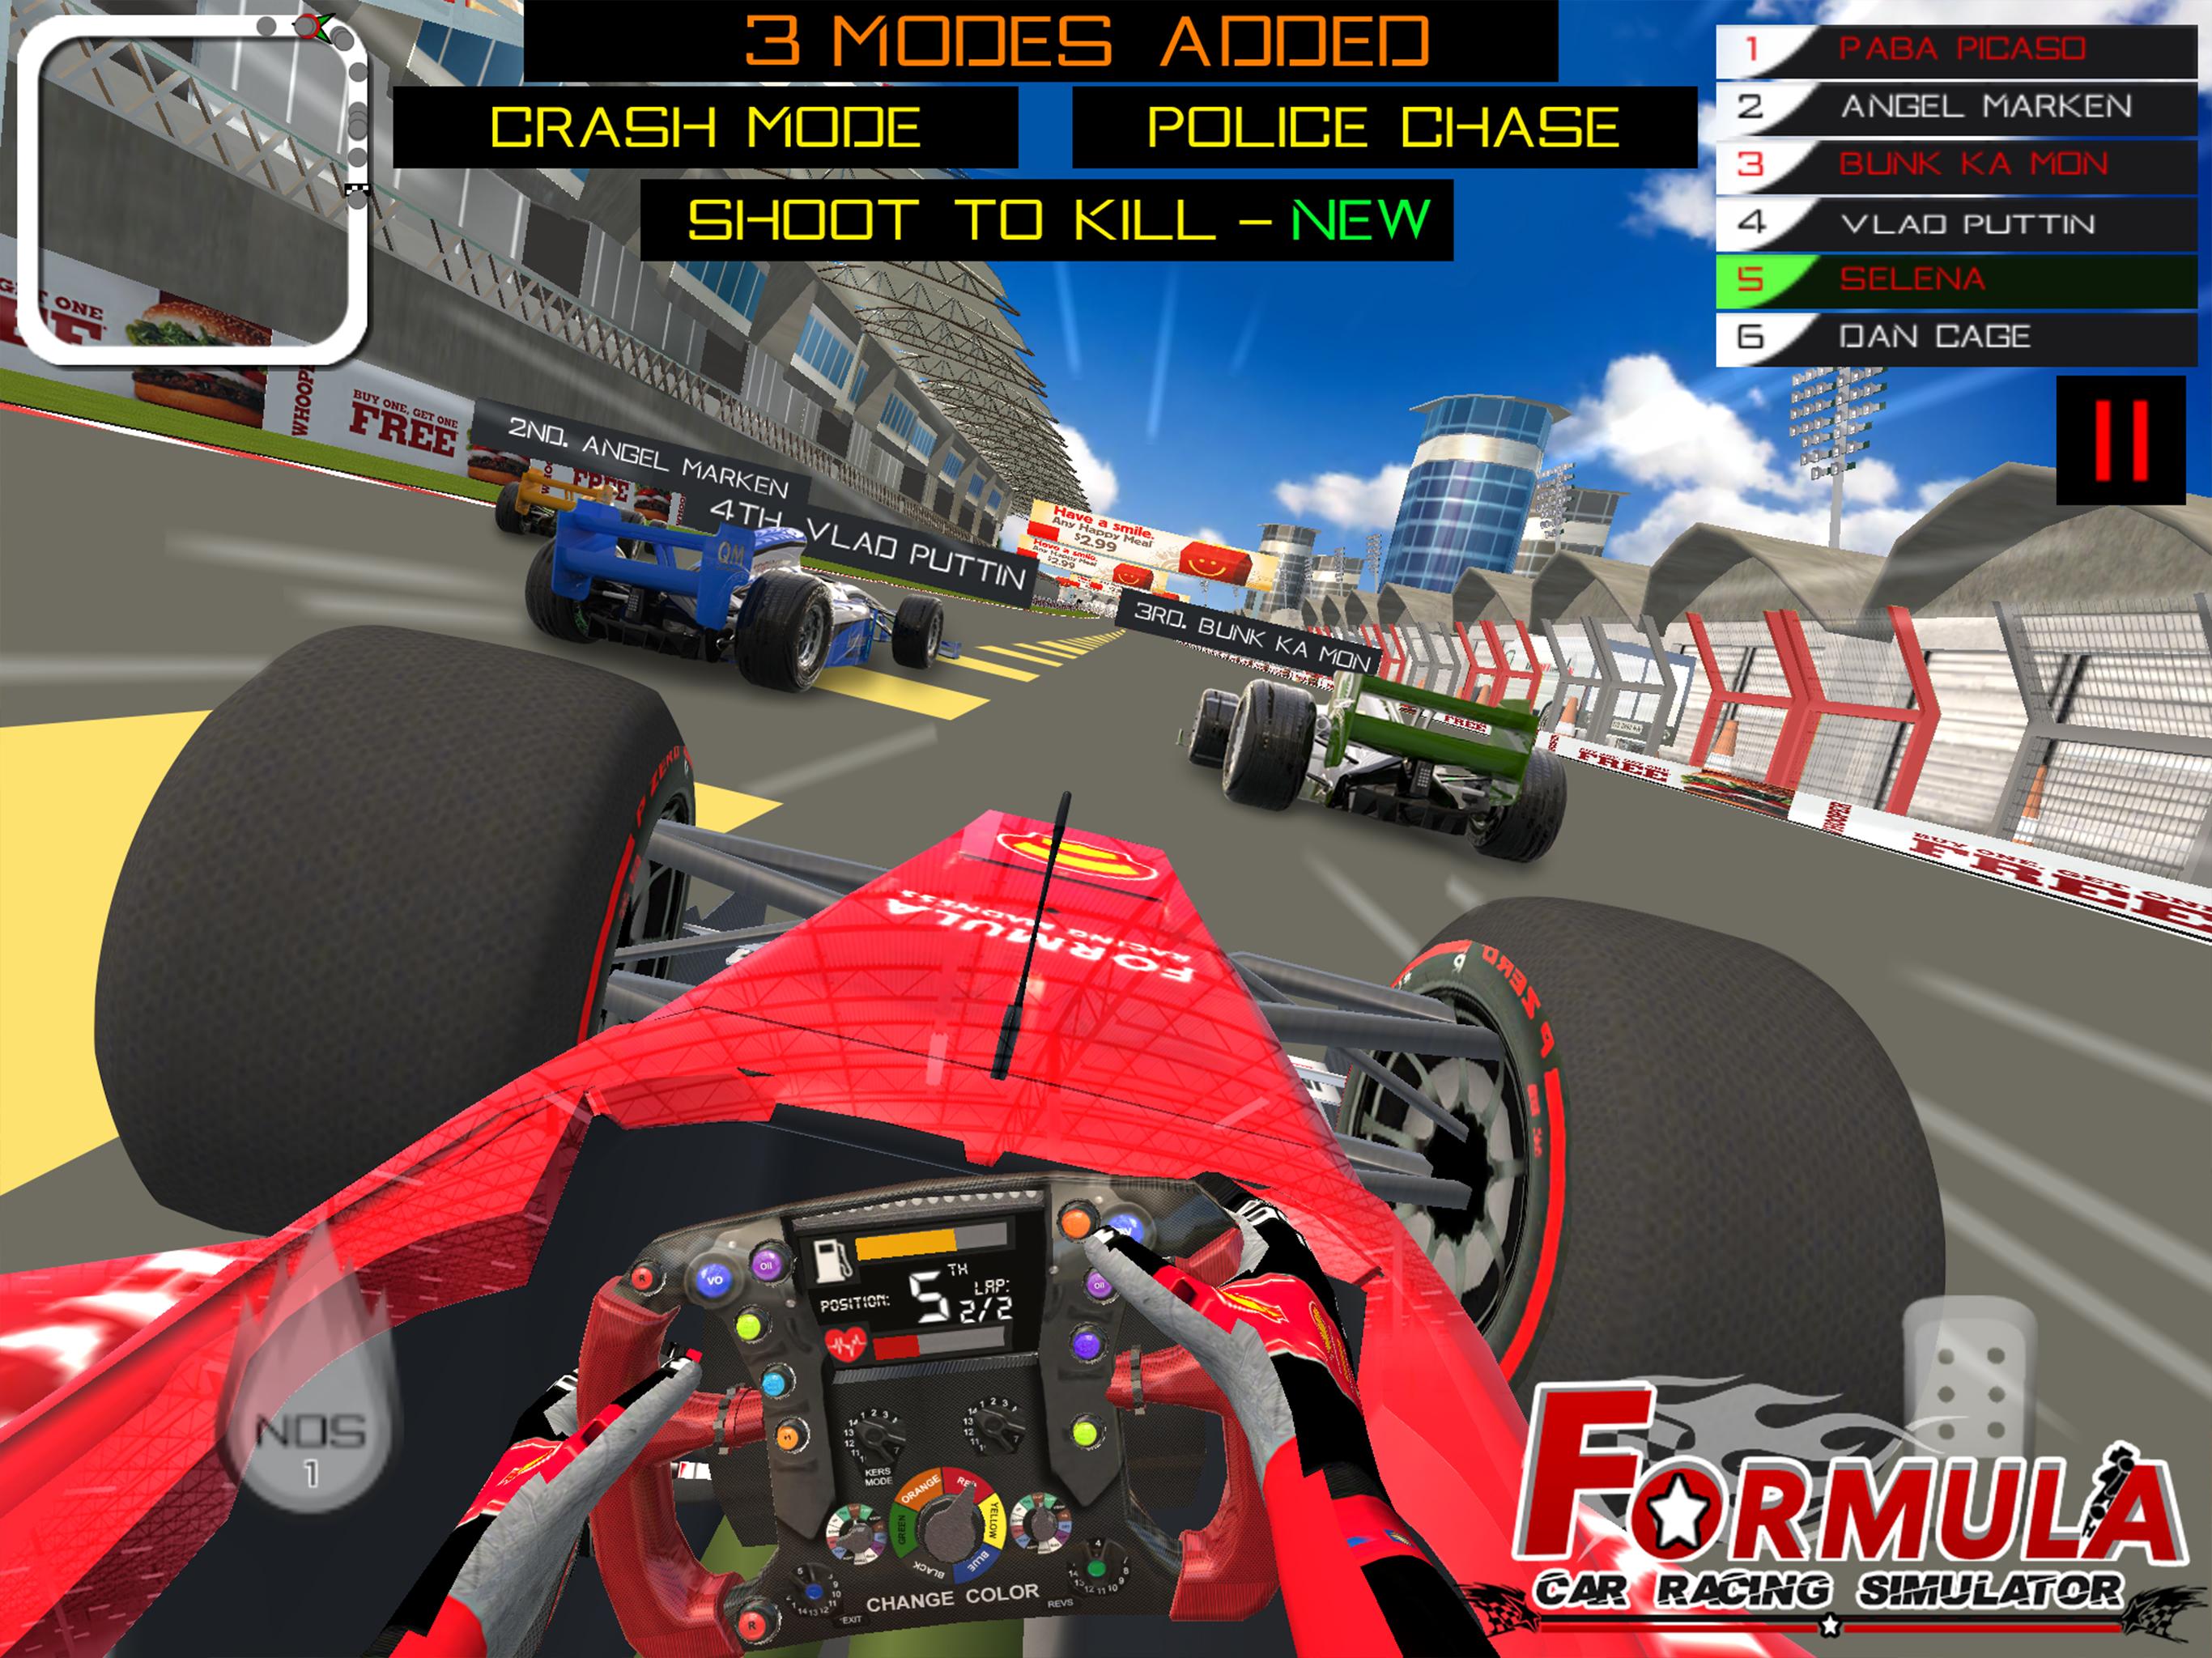 Formula Car Racing Simulator mobile No 1 Race game 16 Screenshot 12